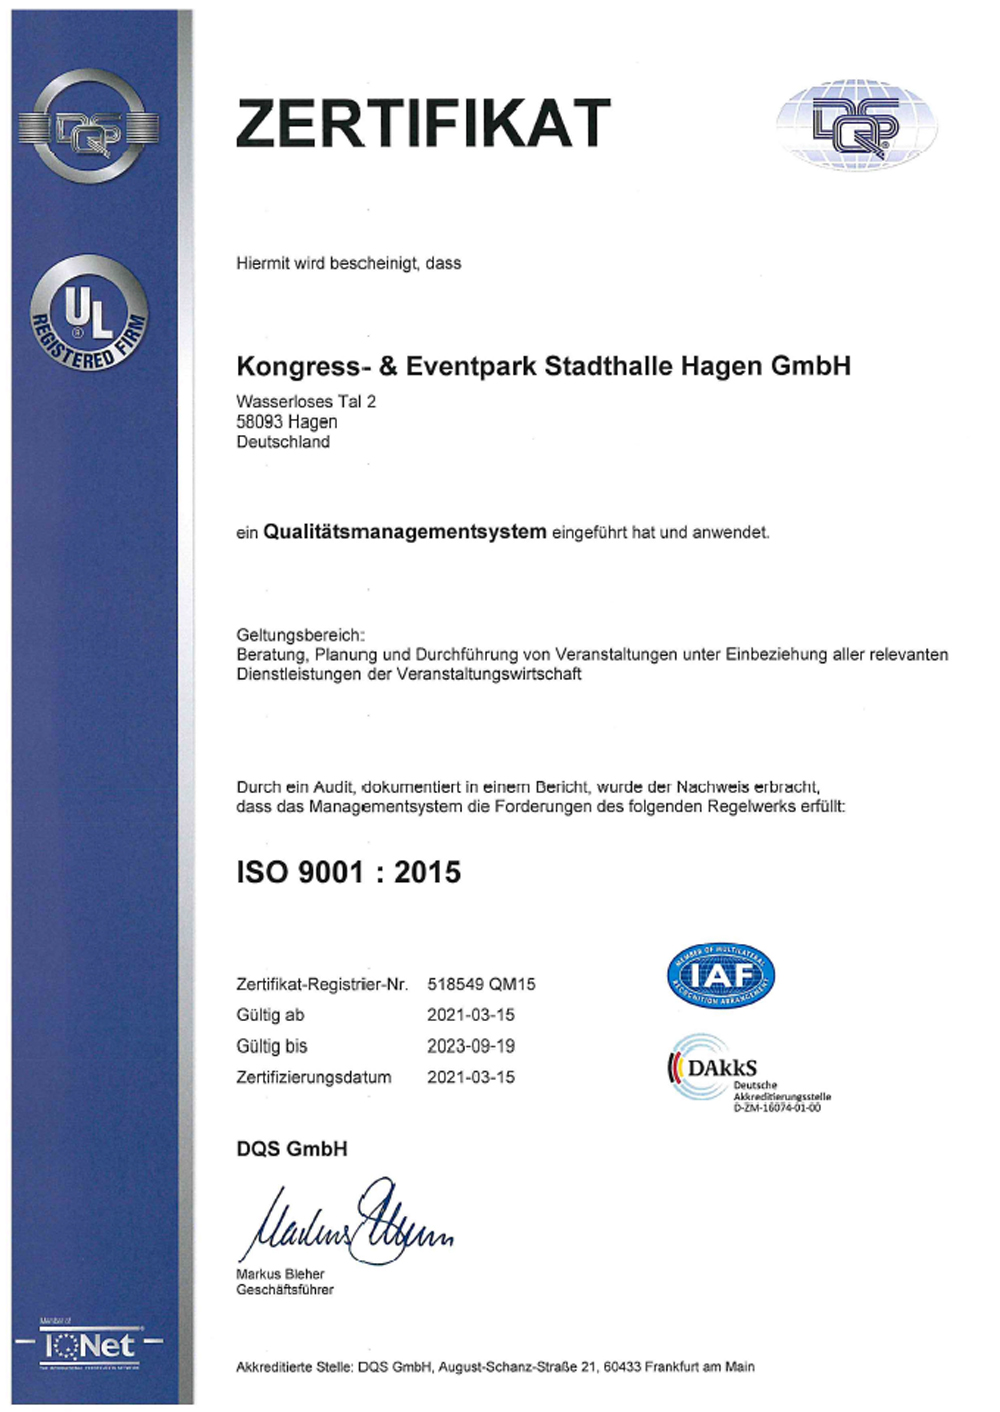 2016 ISO Zertifikat deutsch